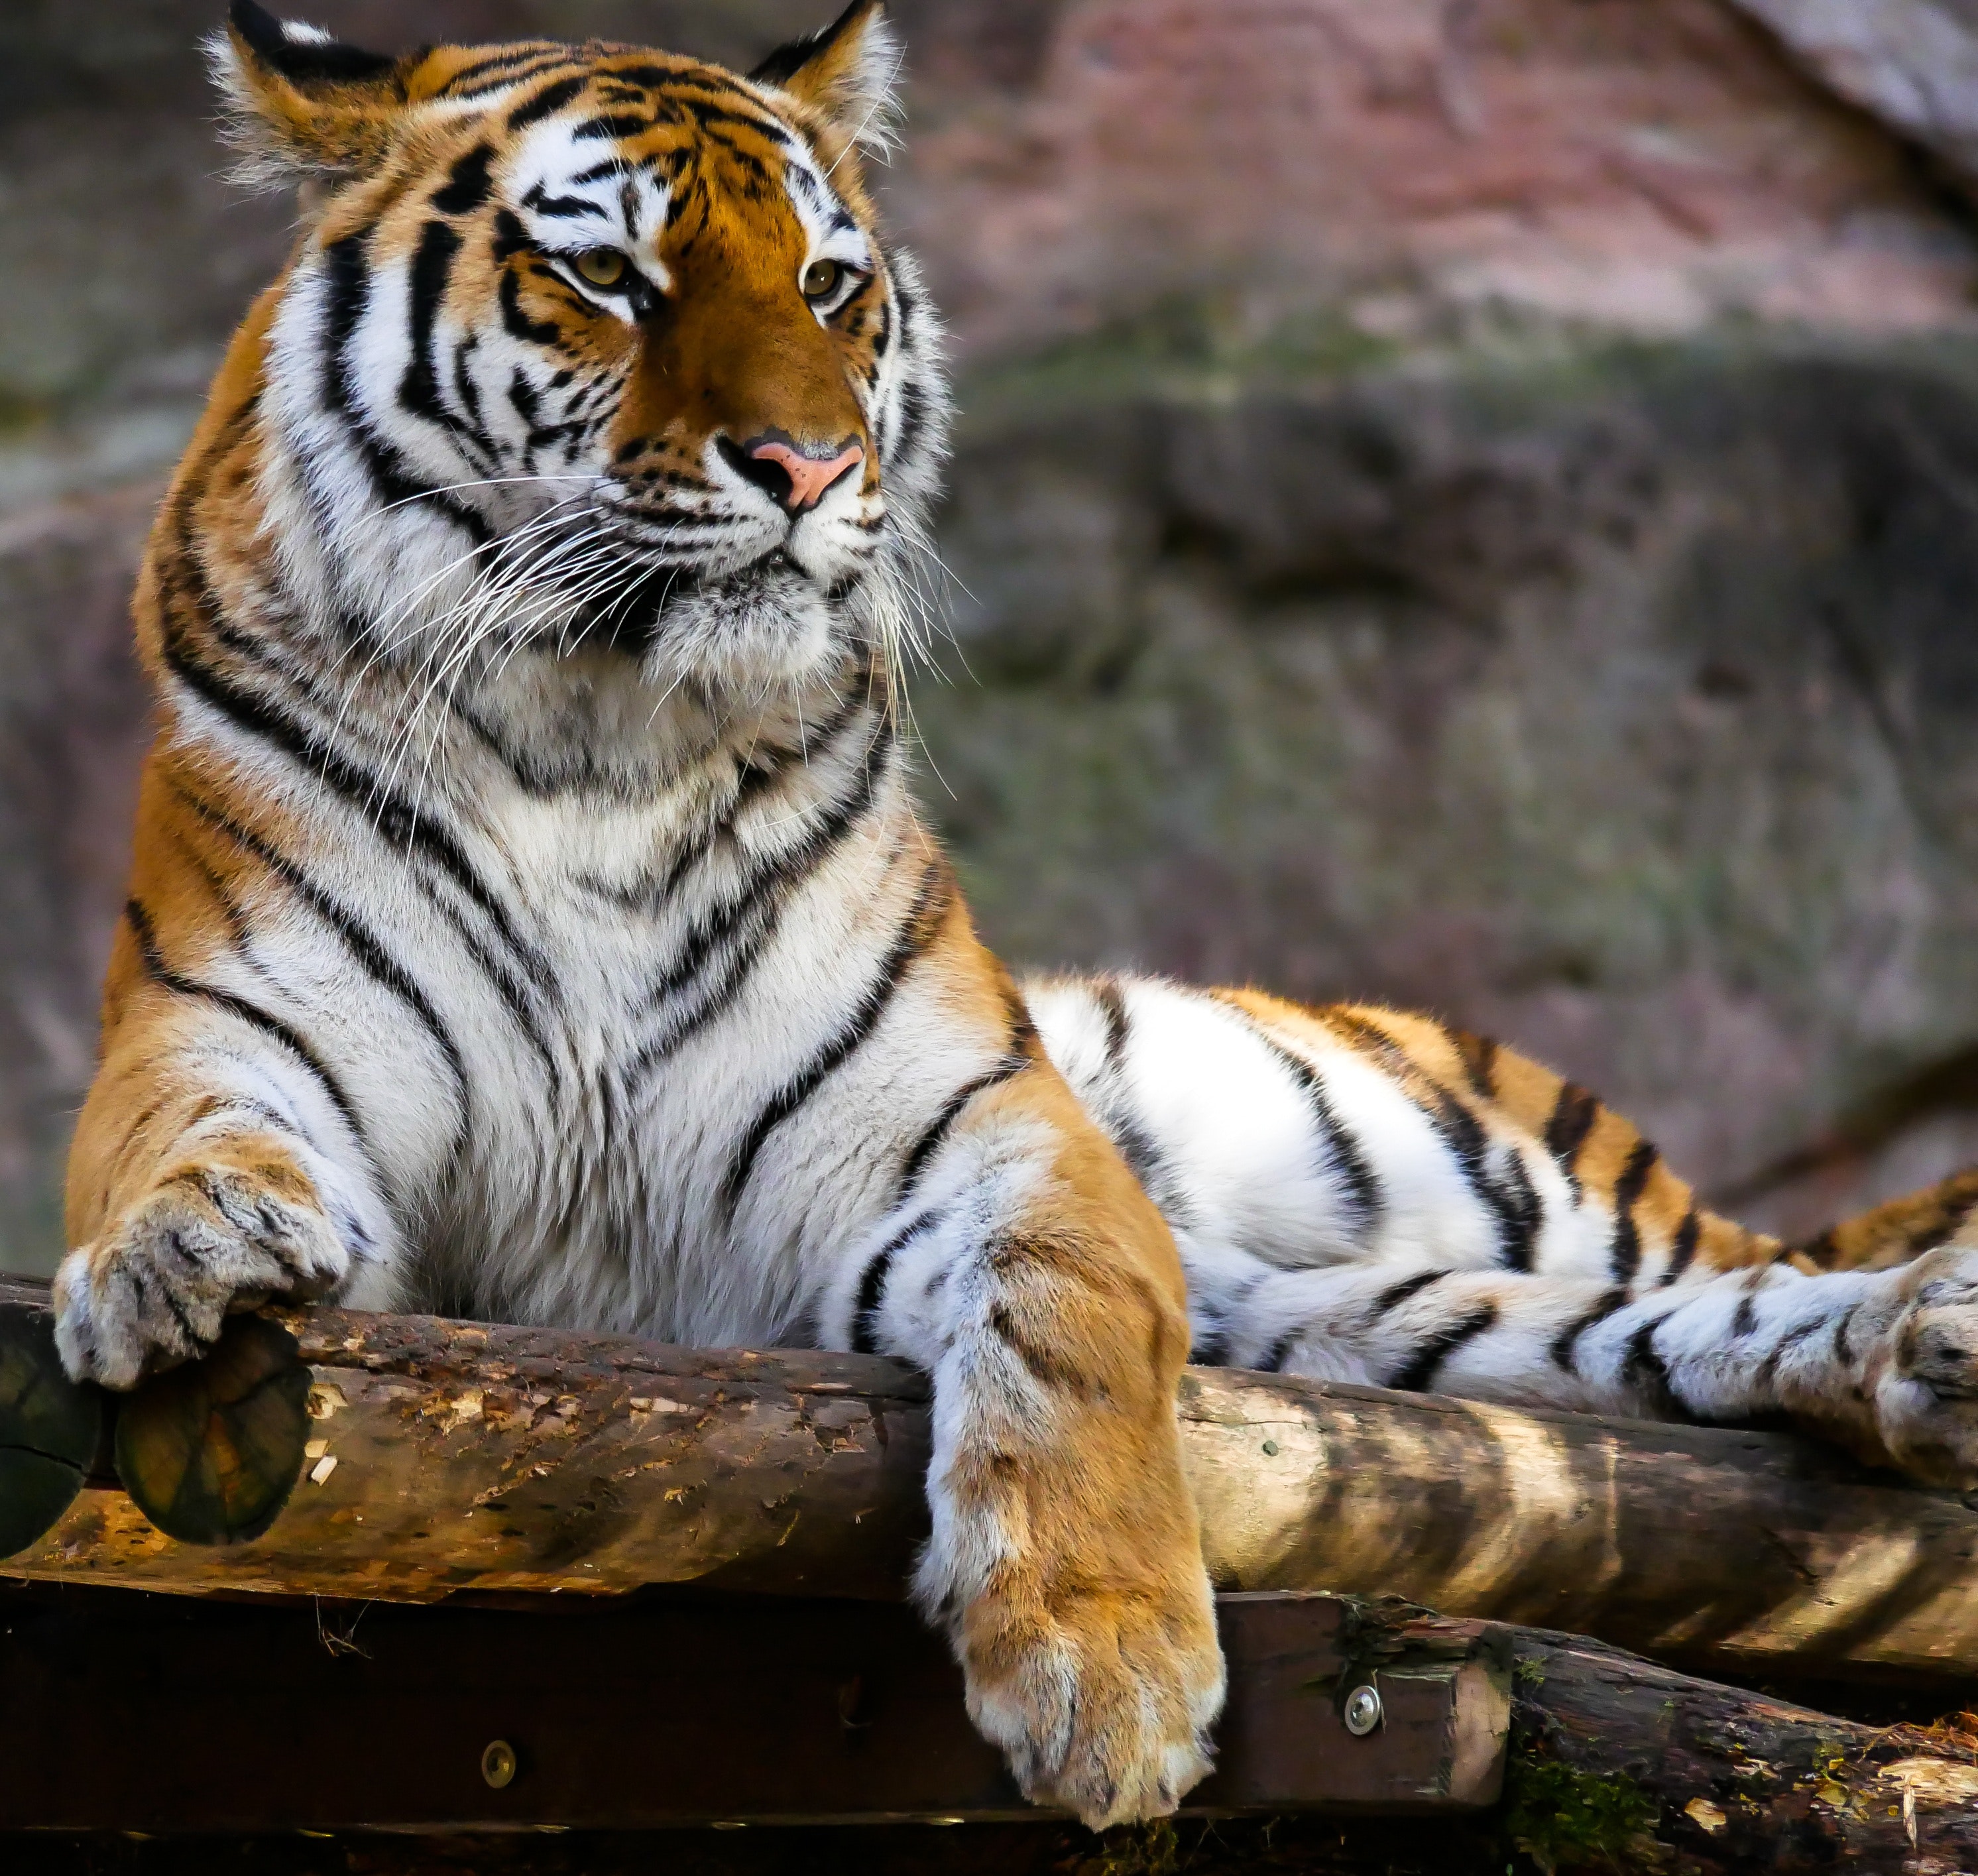 tapete binatang buas,tiger,tierwelt,bengalischer tiger,sibirischer tiger,landtier